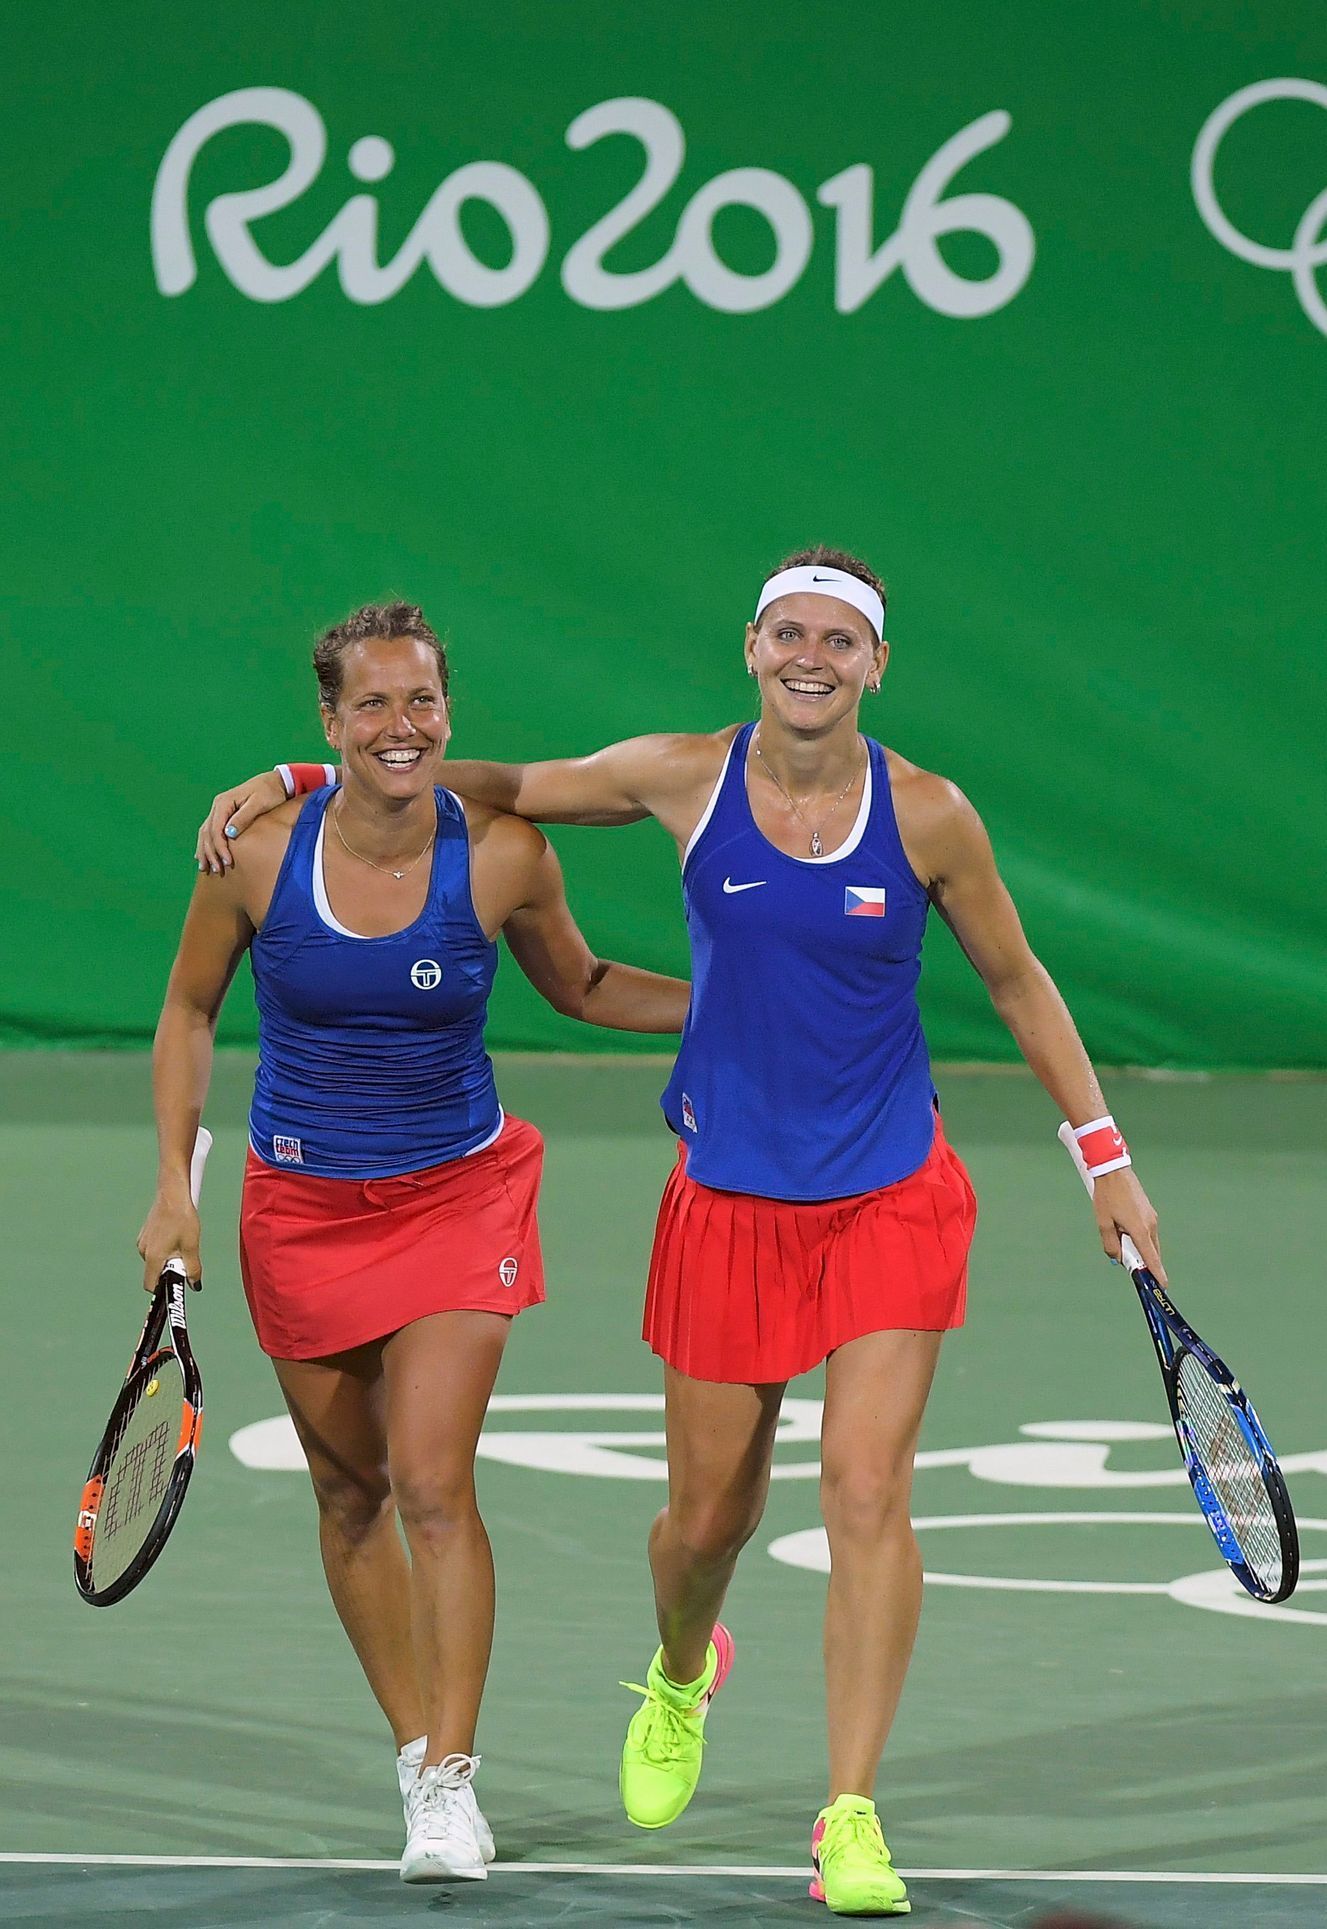 OH 2016, tenis: Lucie Šafářová a Barbora Strýcová